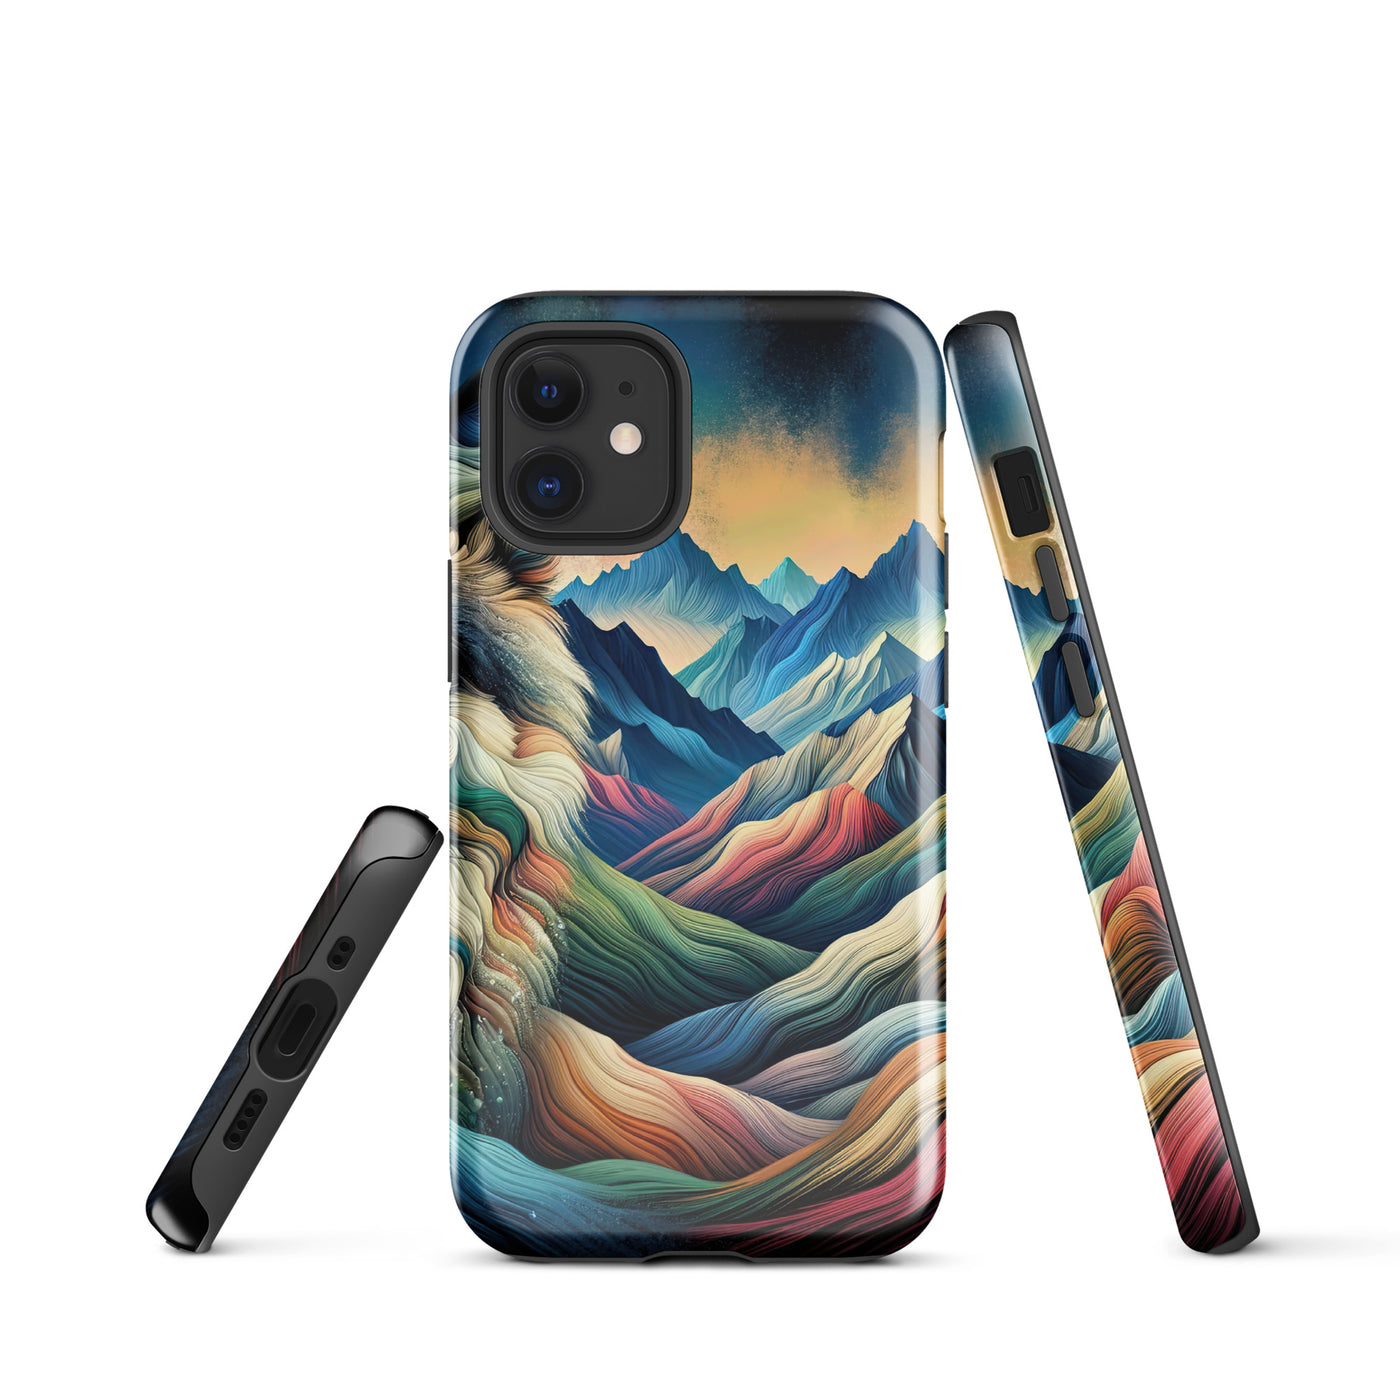 Traumhaftes Alpenpanorama mit Wolf in wechselnden Farben und Mustern (AN) - iPhone Schutzhülle (robust) xxx yyy zzz iPhone 12 mini